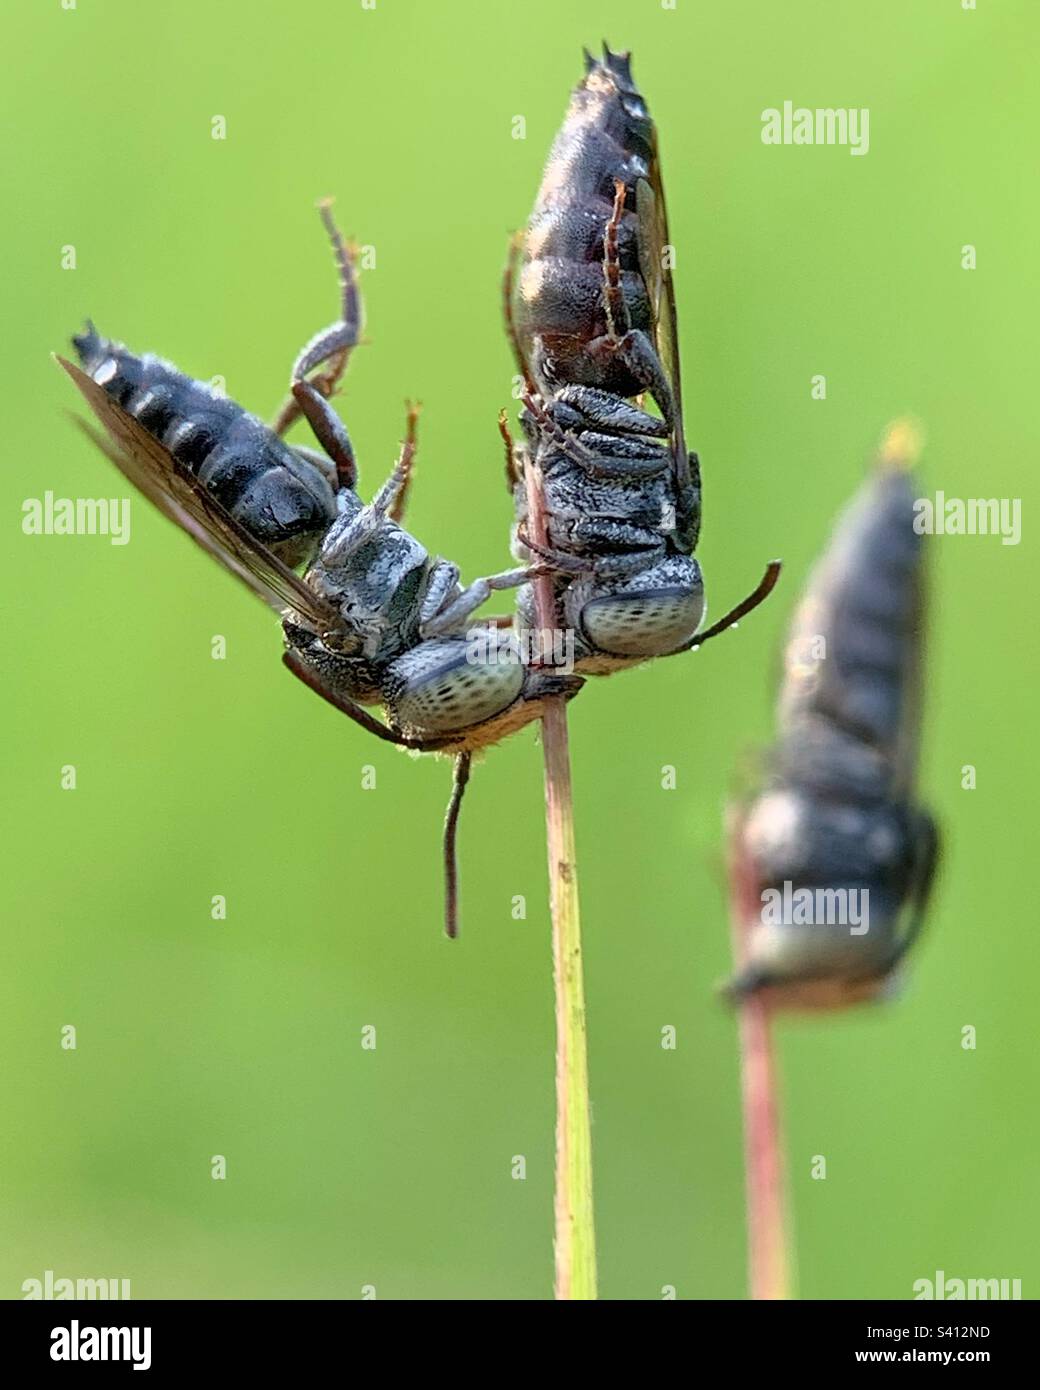 insecto lindo y encantador, atrapado haciendo trampa frente a su pareja Foto de stock